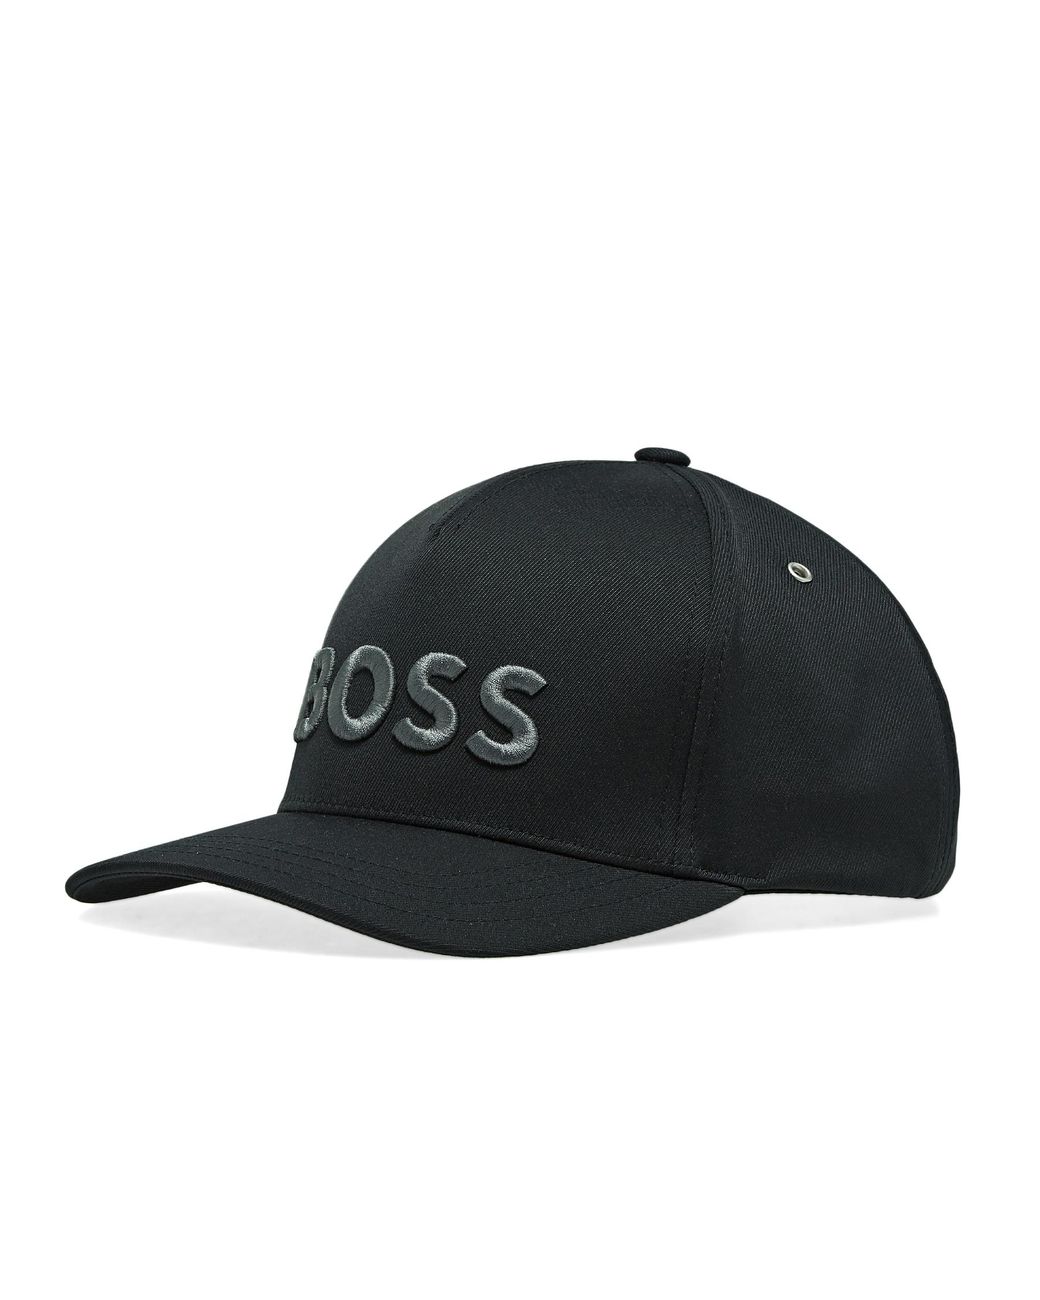 BOSS by HUGO BOSS Sevile-iconic Cap in Black for Men | Lyst